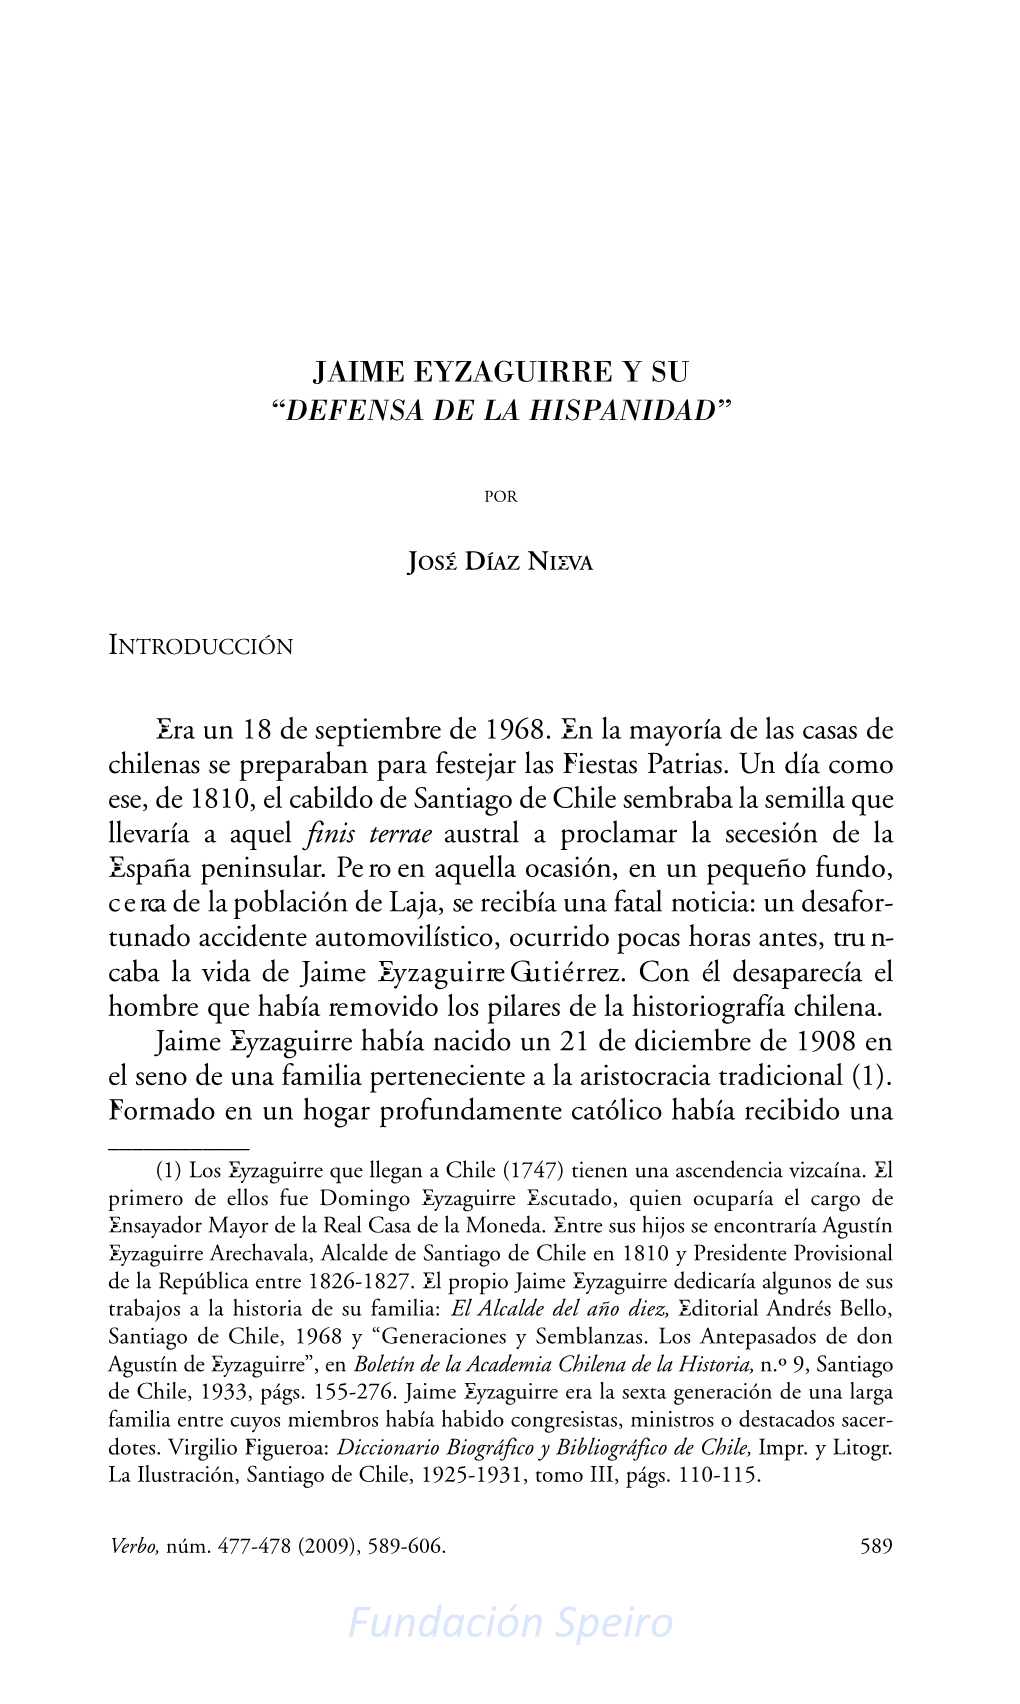 Jaime Eyzaguirre Y Su “Defensa De La Hispanidad”